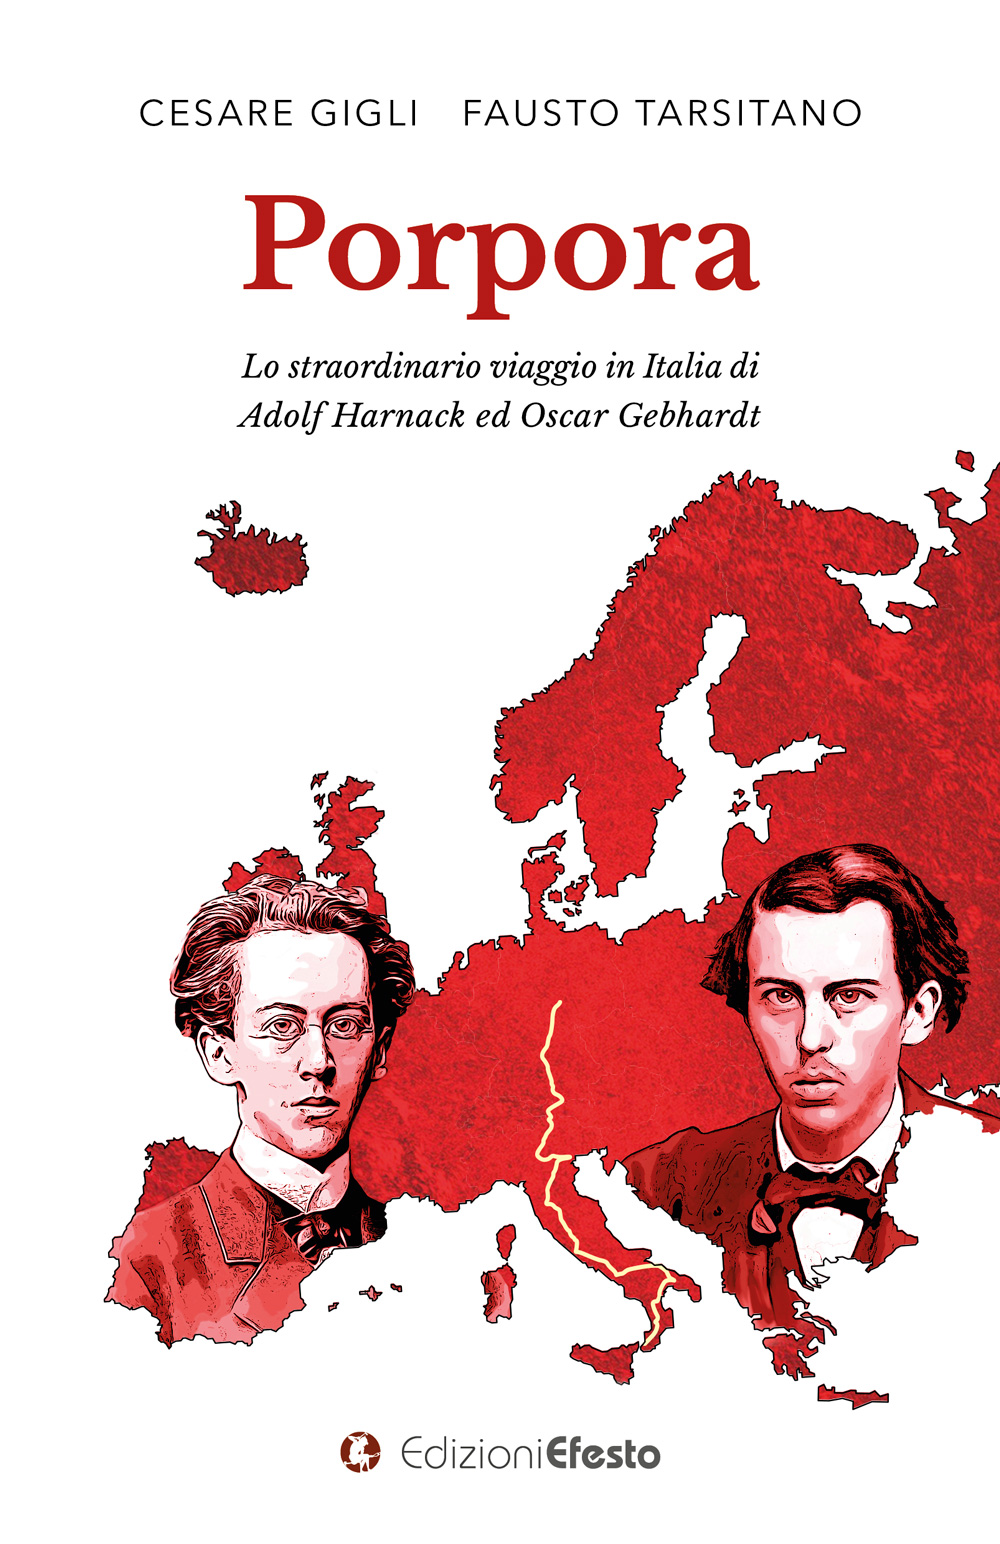 Copertina di Porpora, lo straordinario viaggio in Italia di Adolf Harnack ed Oscar Gebhardt